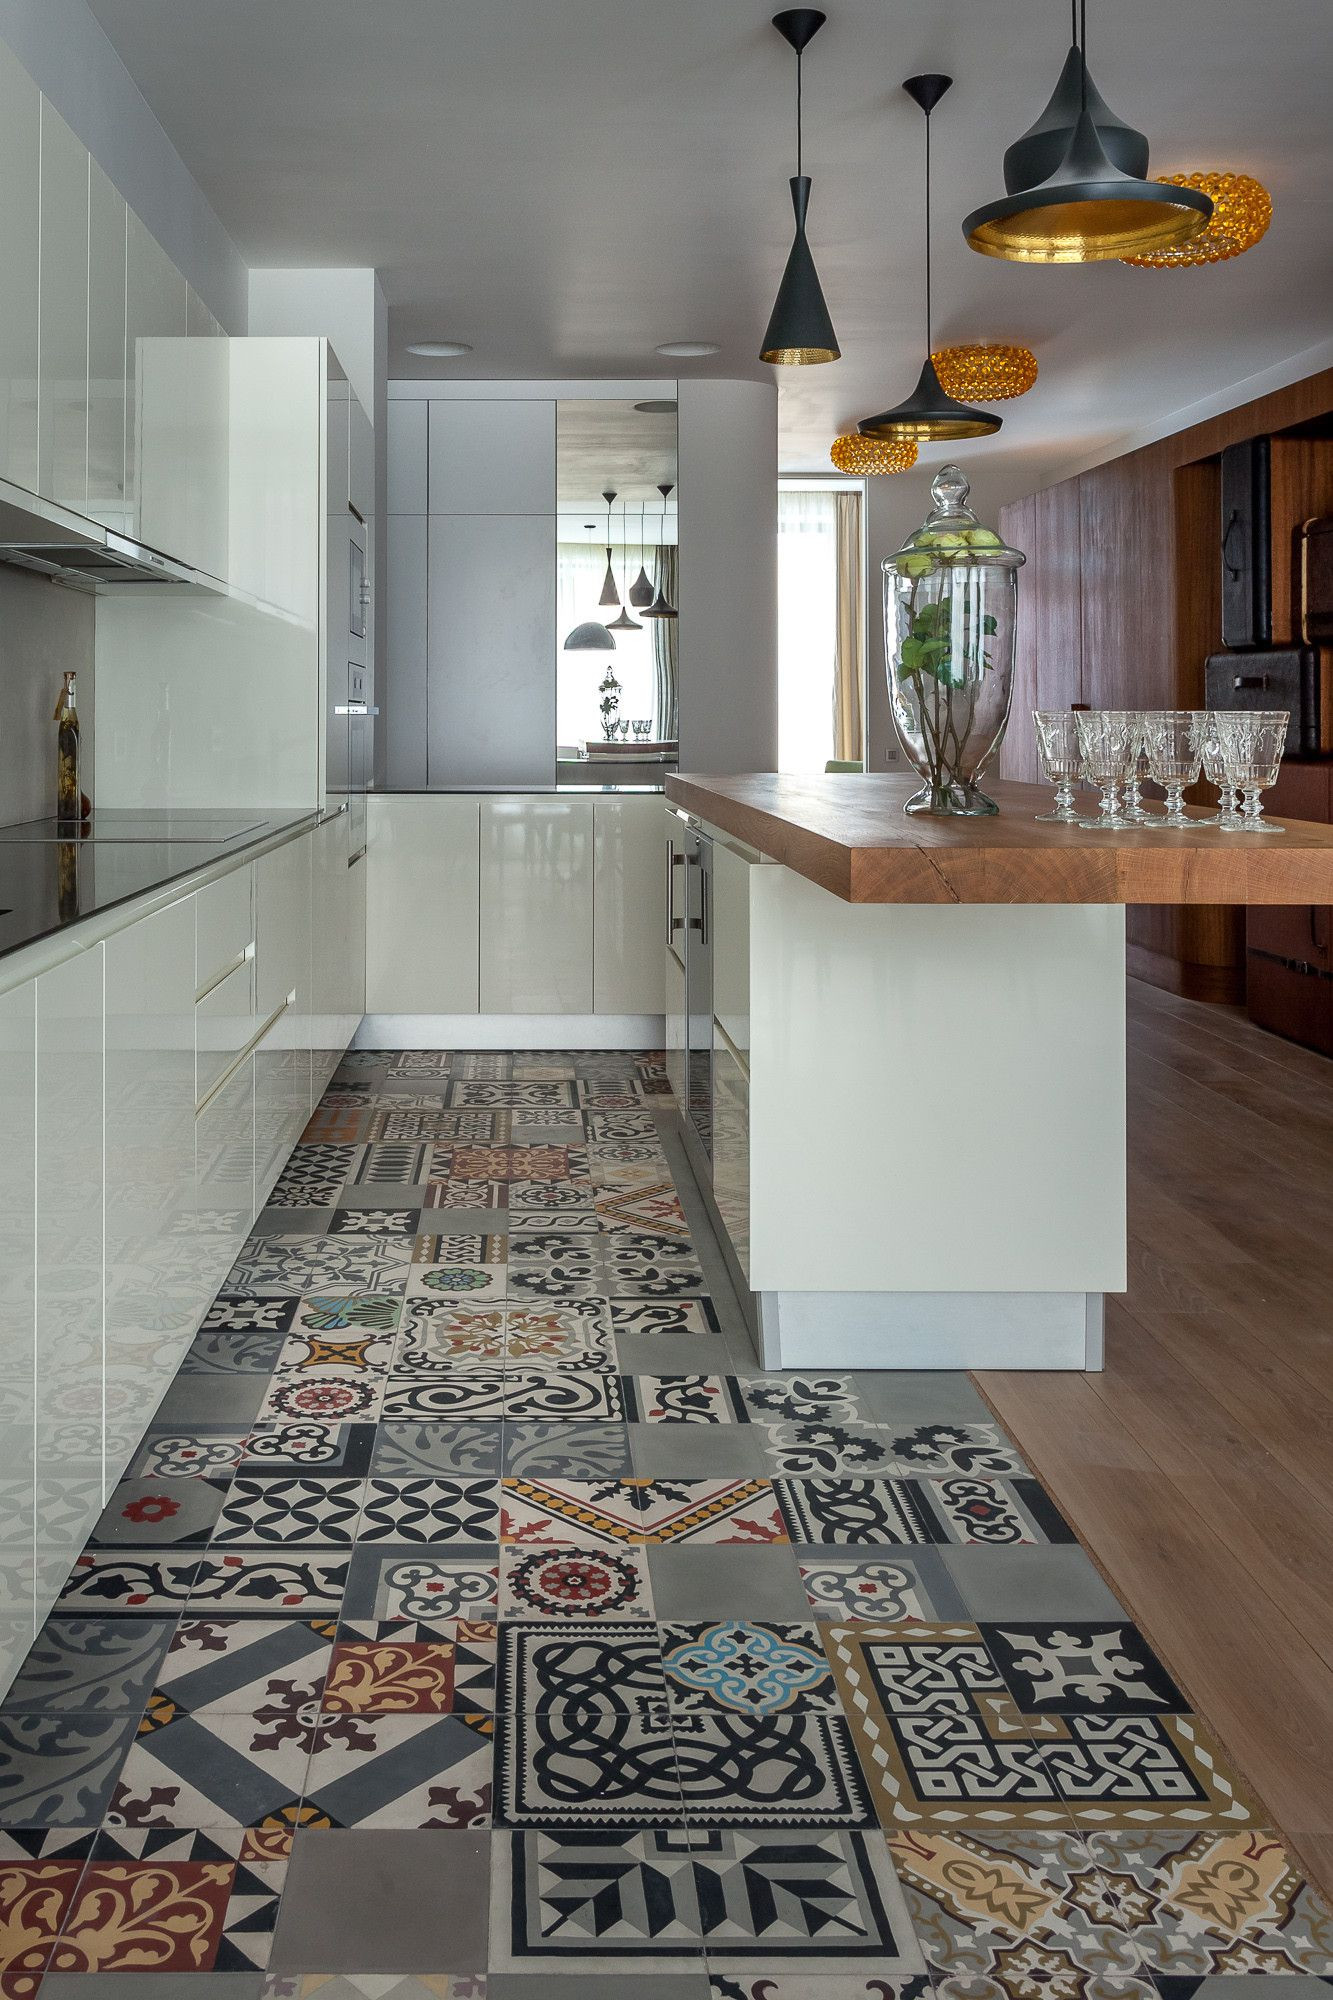 Vintage Kitchen Floor Tile
 18 Beautiful Examples of Kitchen Floor Tile